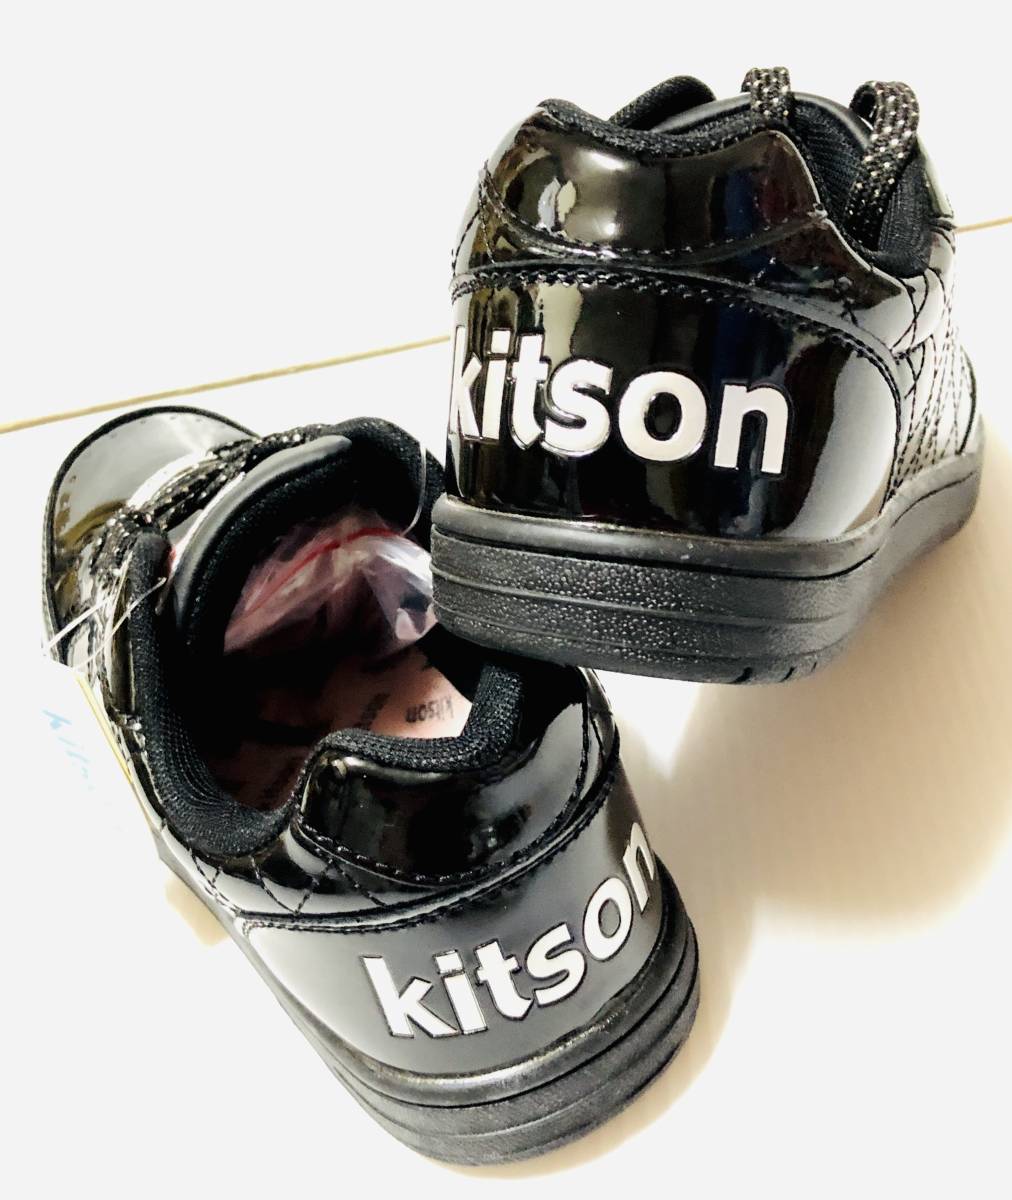  новый товар в коробке Kitson kitson casual гонки выше спортивные туфли KS-203 черный 23.5.